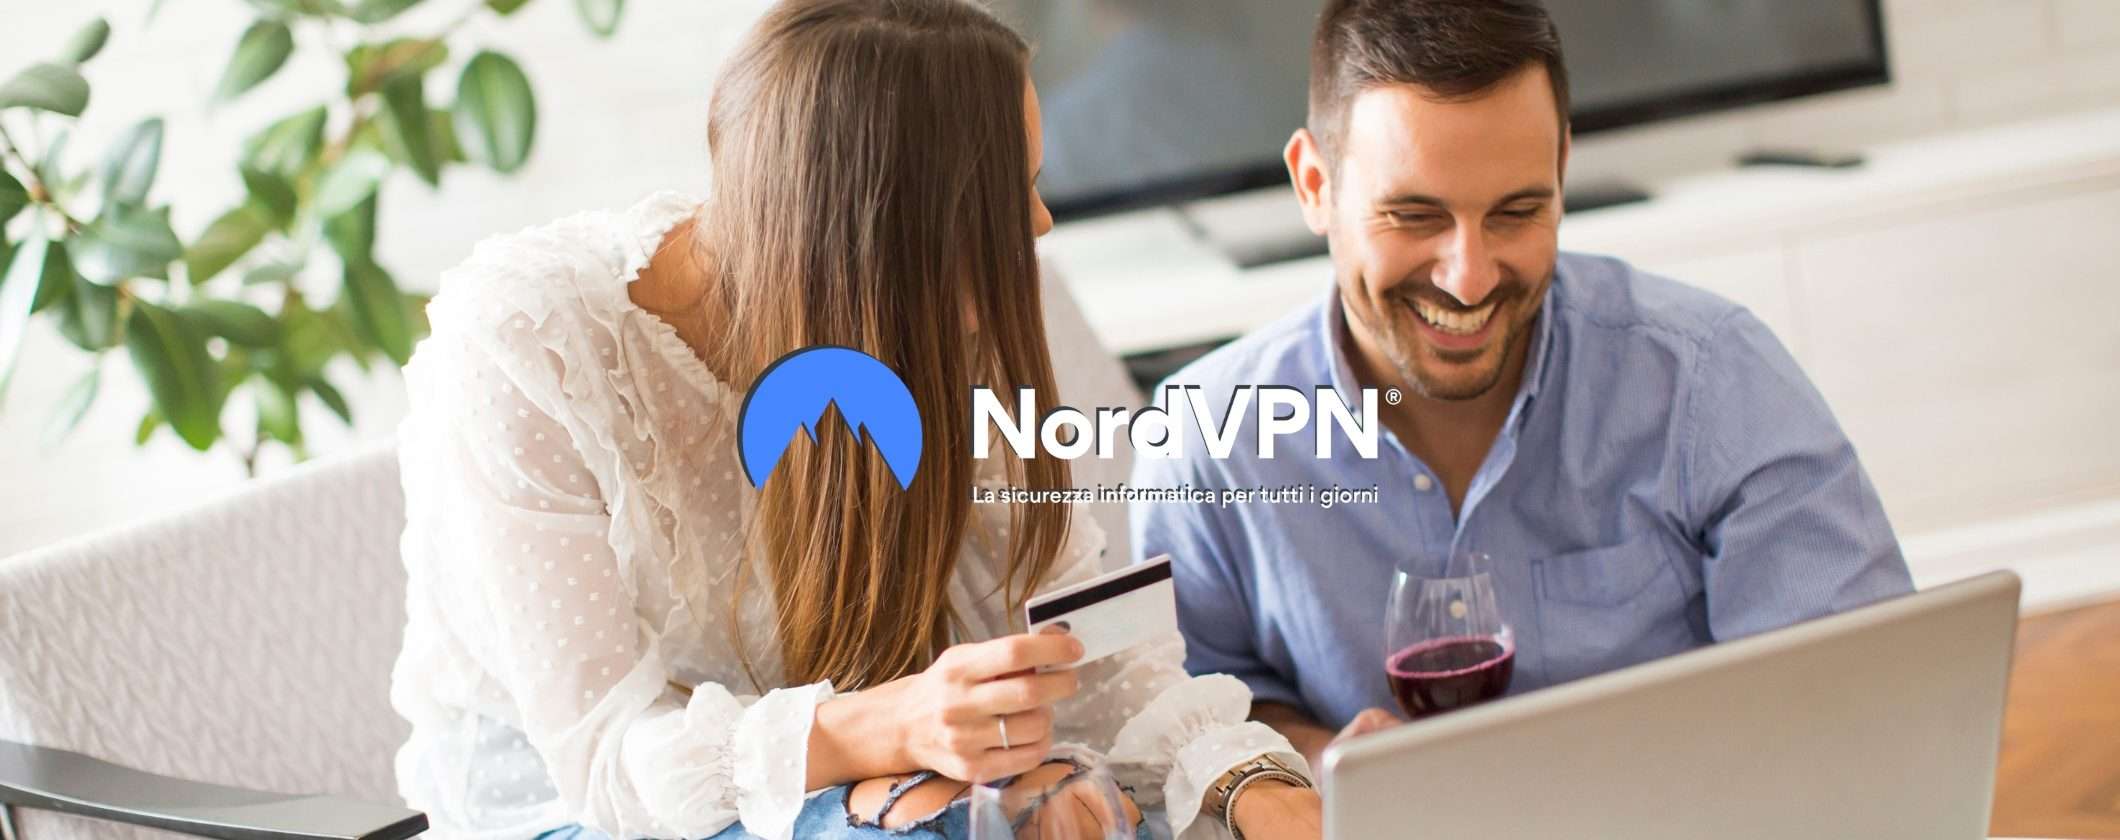 NordVPN non teme confronti: la VPN completa a prezzo top